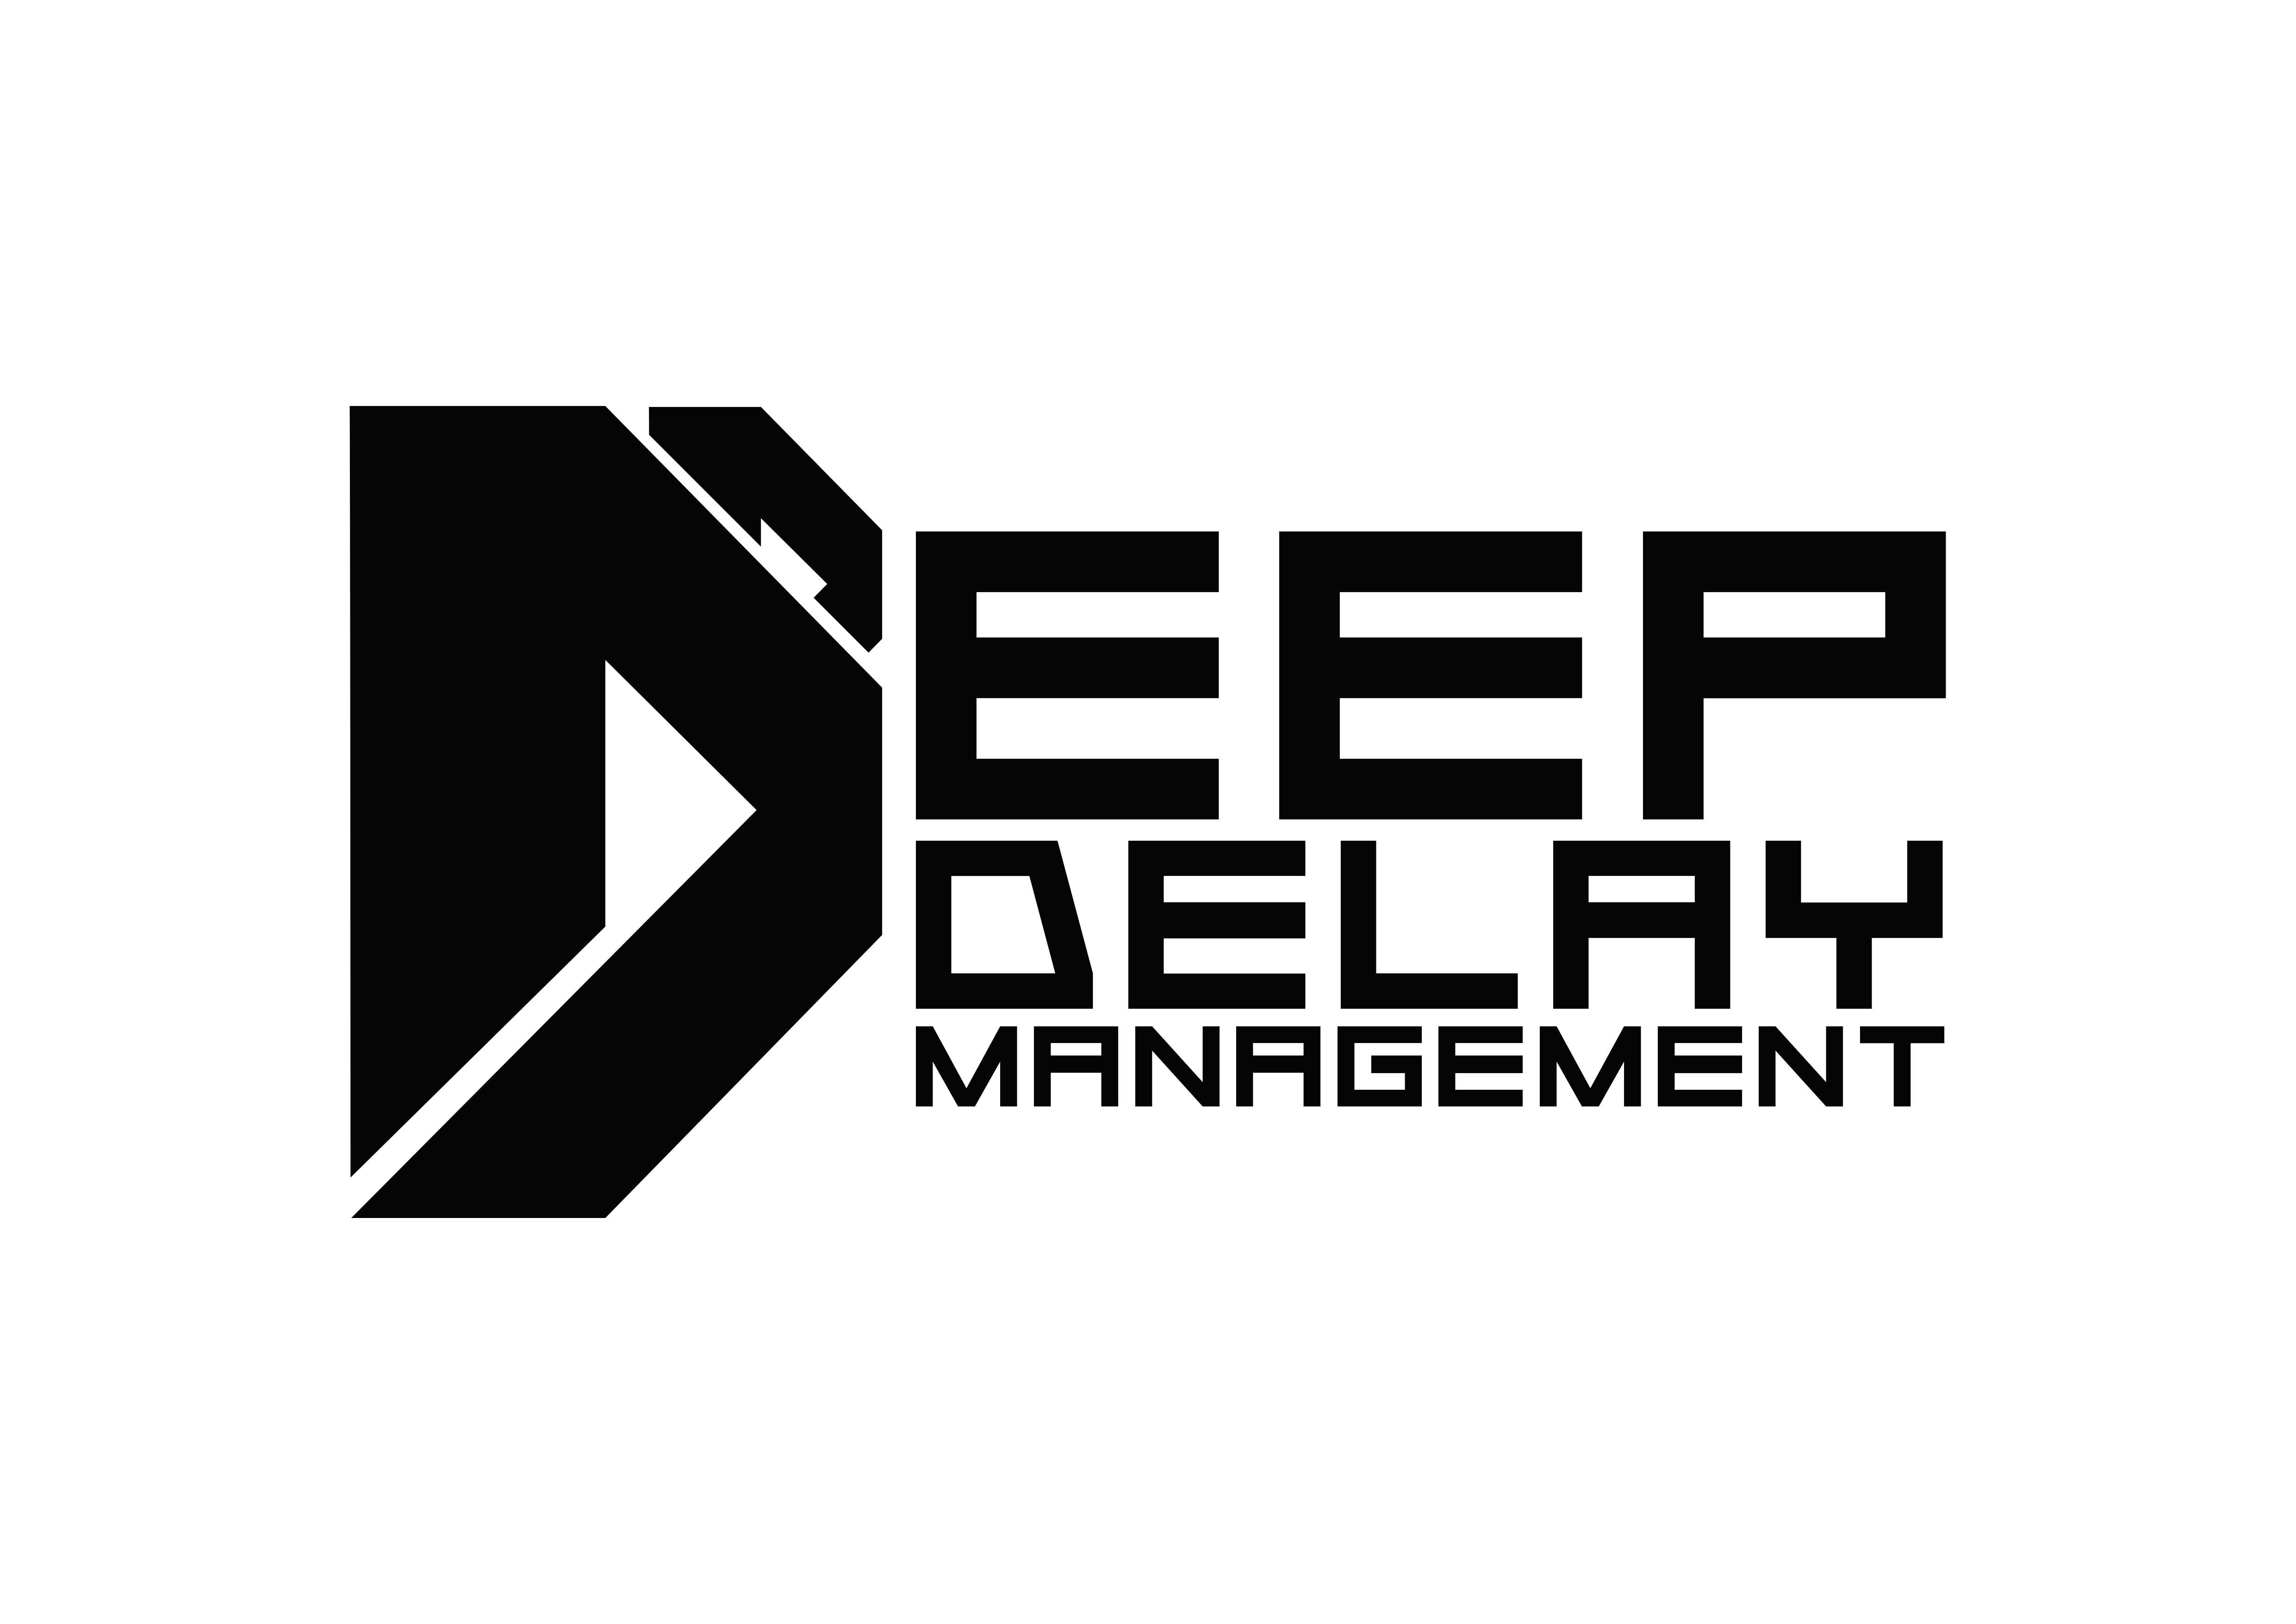 Deep Delay Management